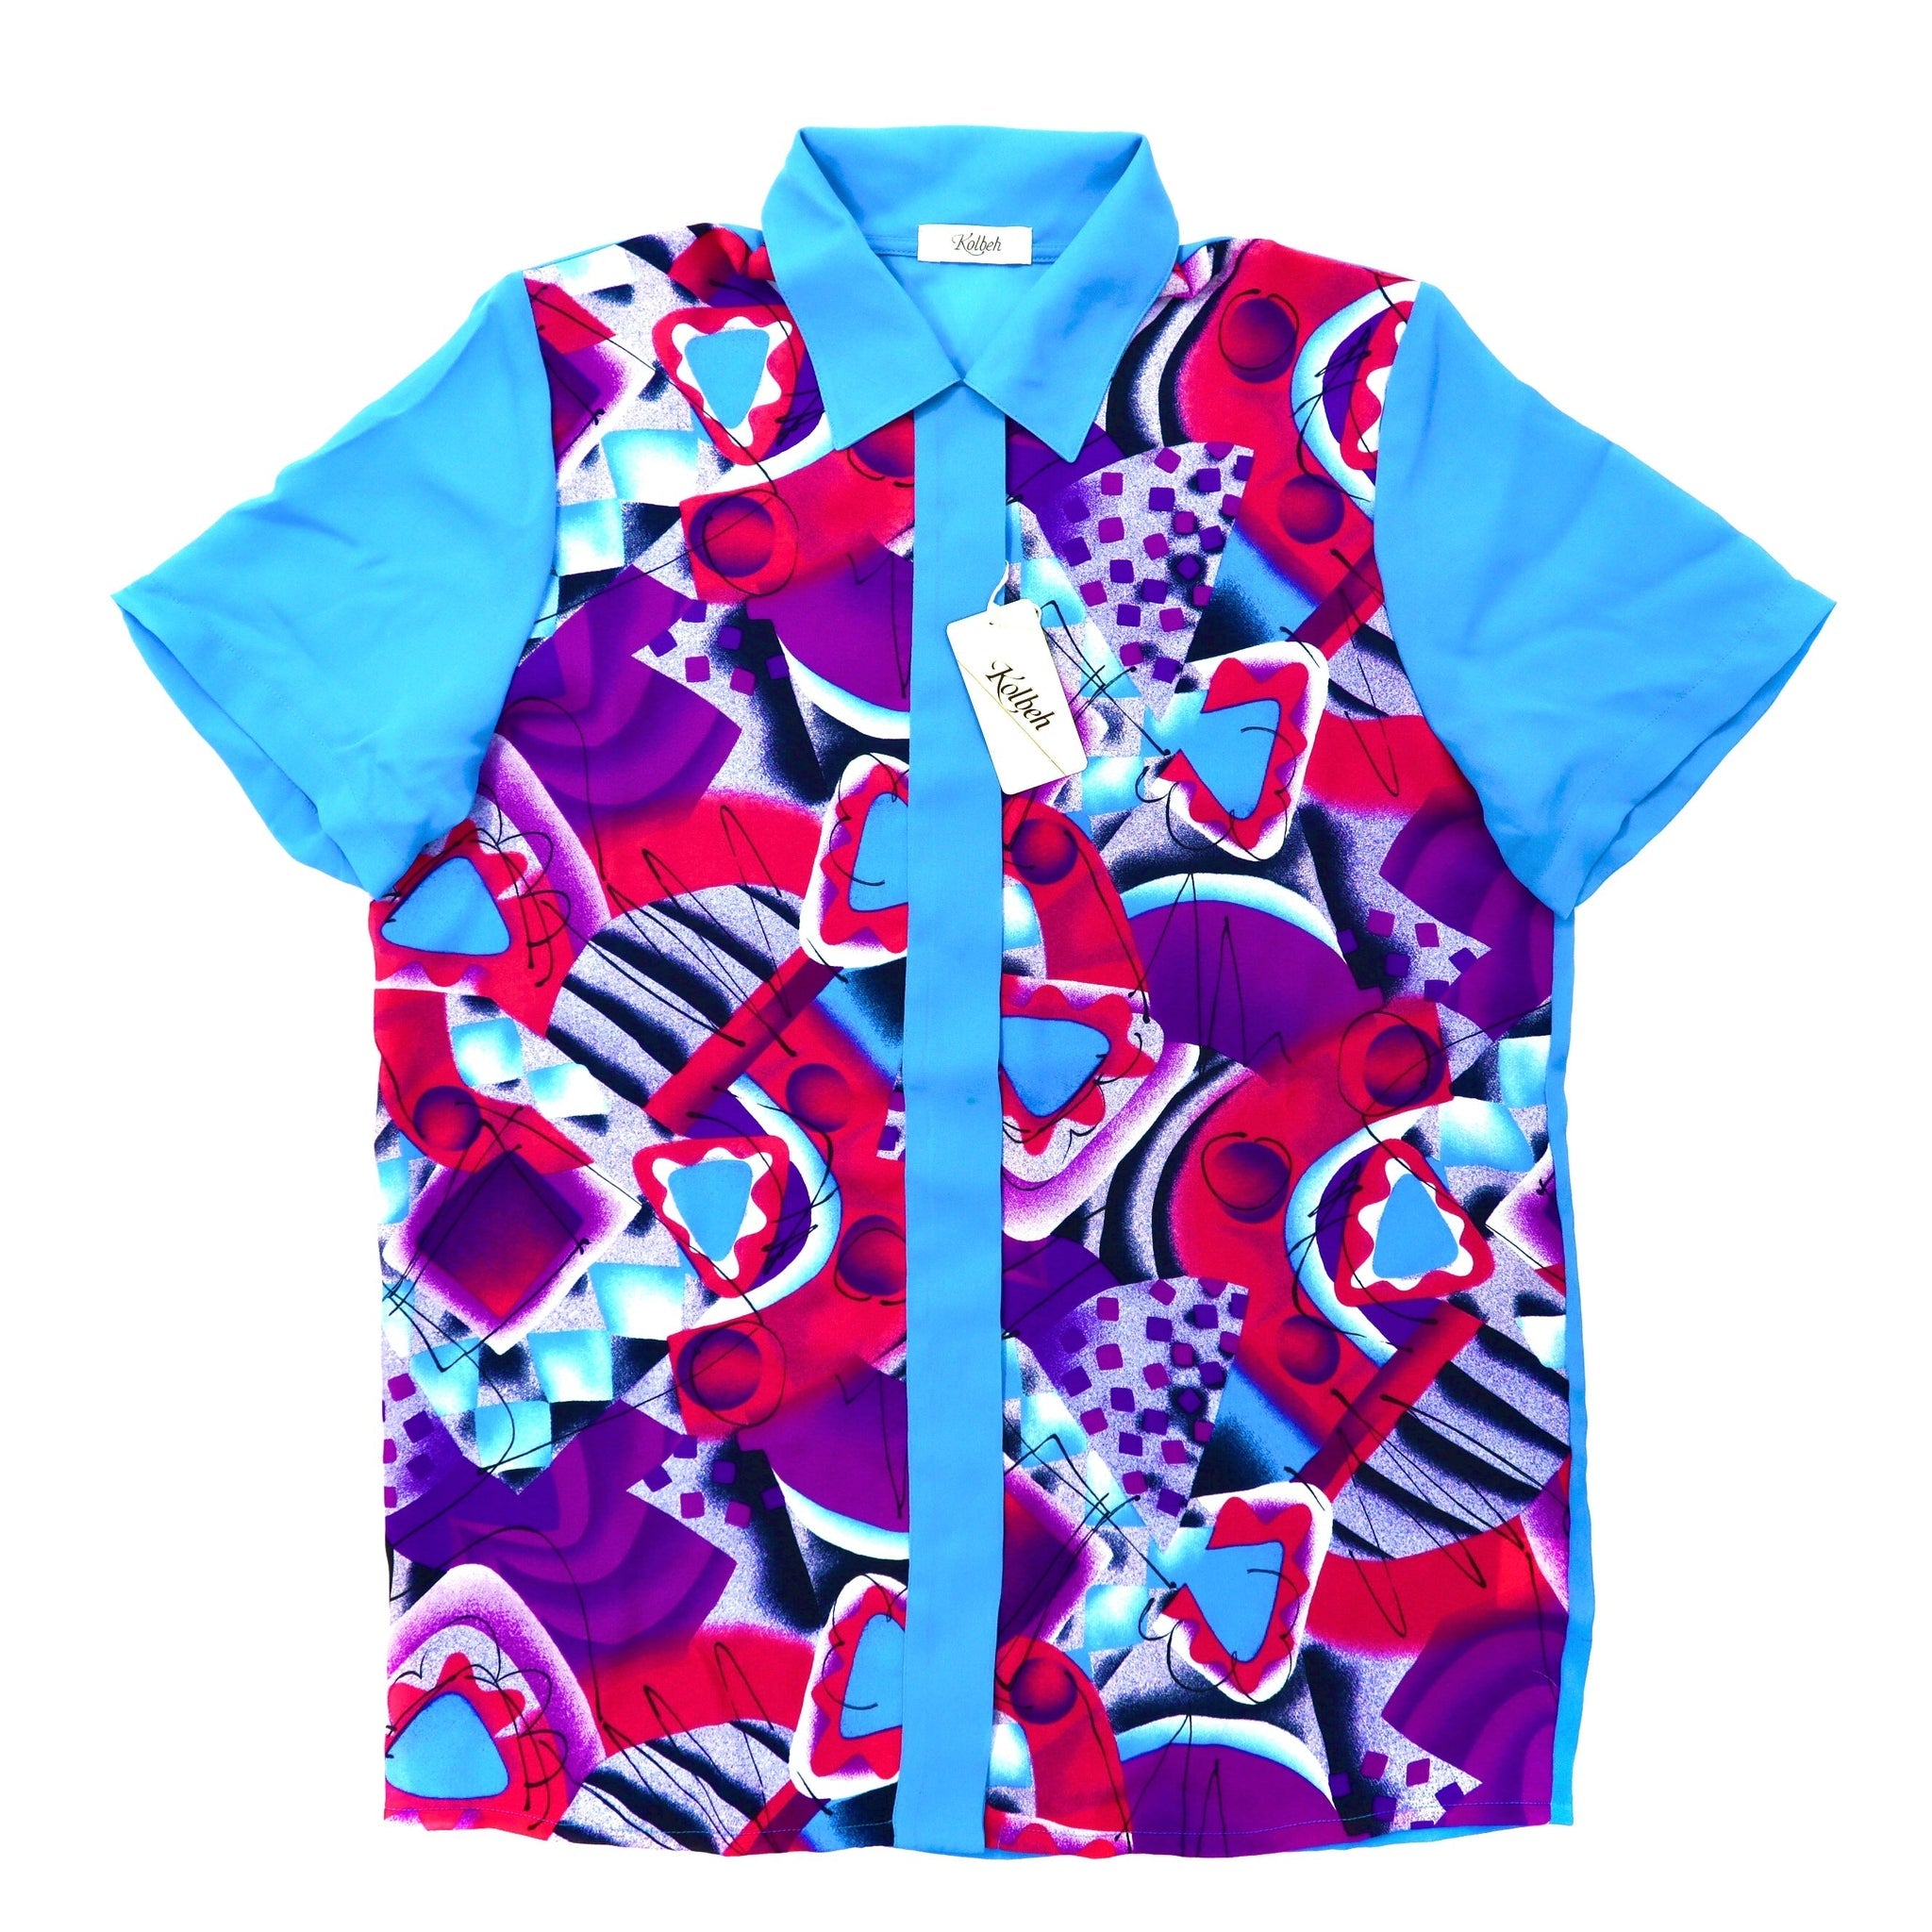 Kolbeh 半袖レトロシャツ 9R ブルー ポリエステル 総柄 日本製 未使用品